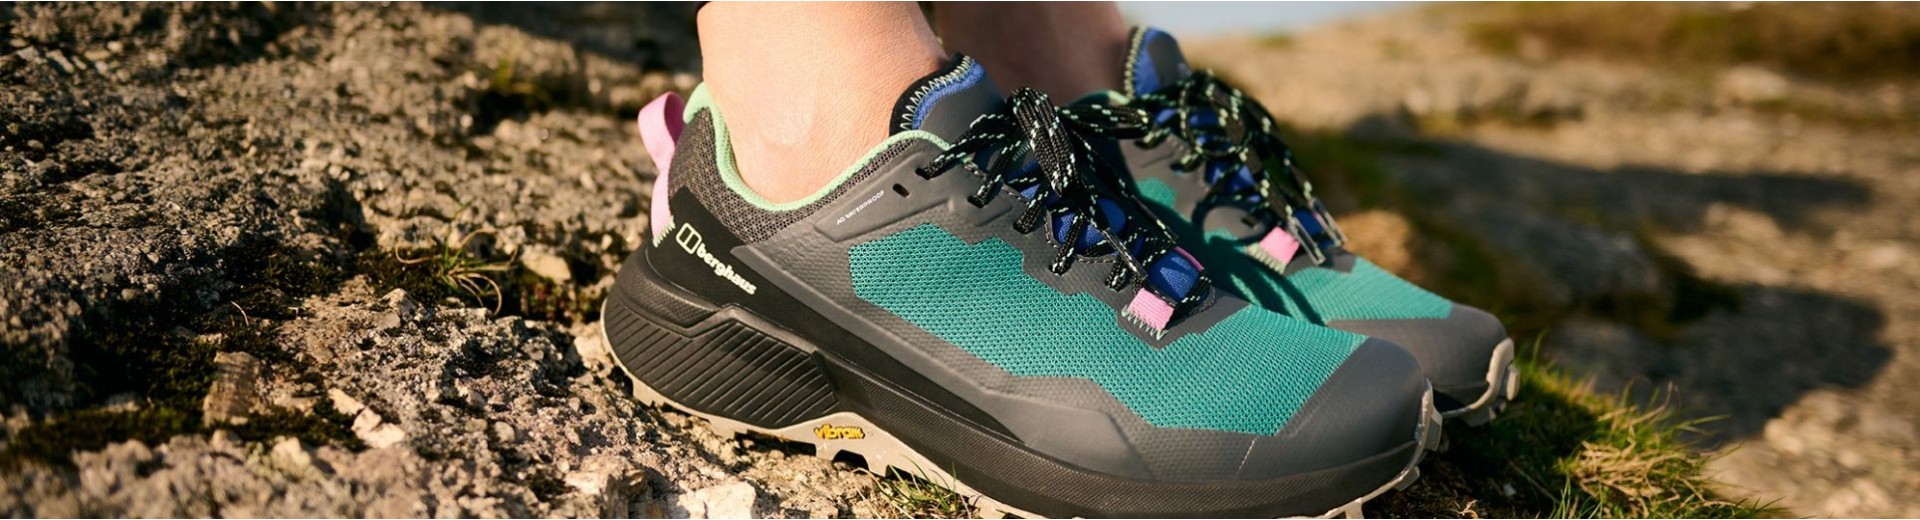 Botas y zapatillas para outdoor I Tienda online Berghaus®